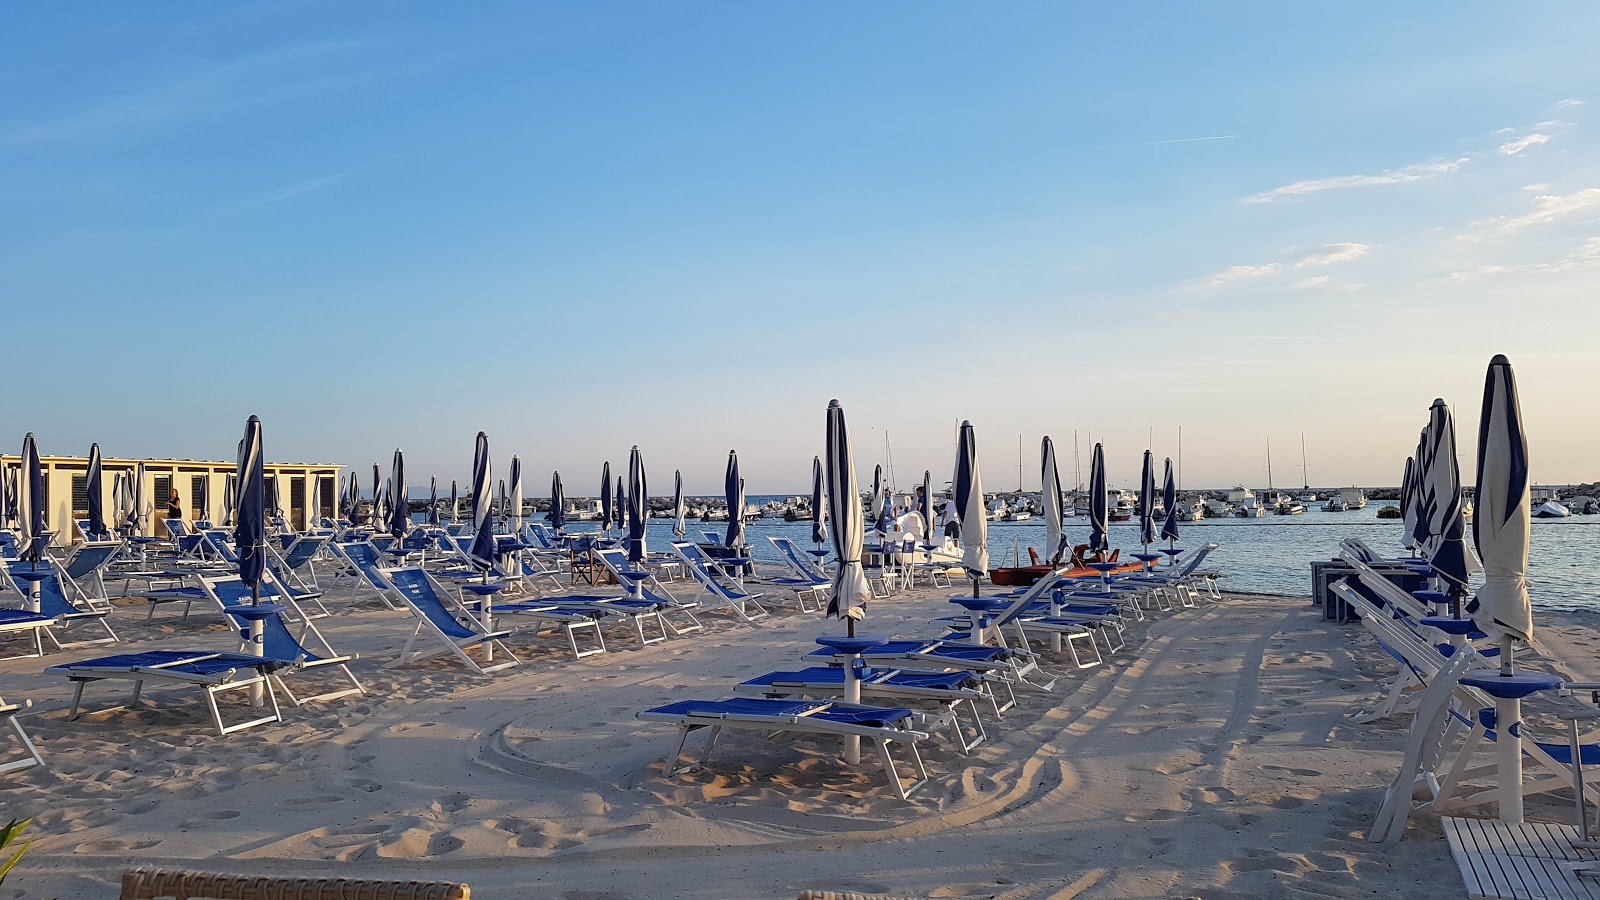 Spiaggia Di Domani的照片 海滩度假区